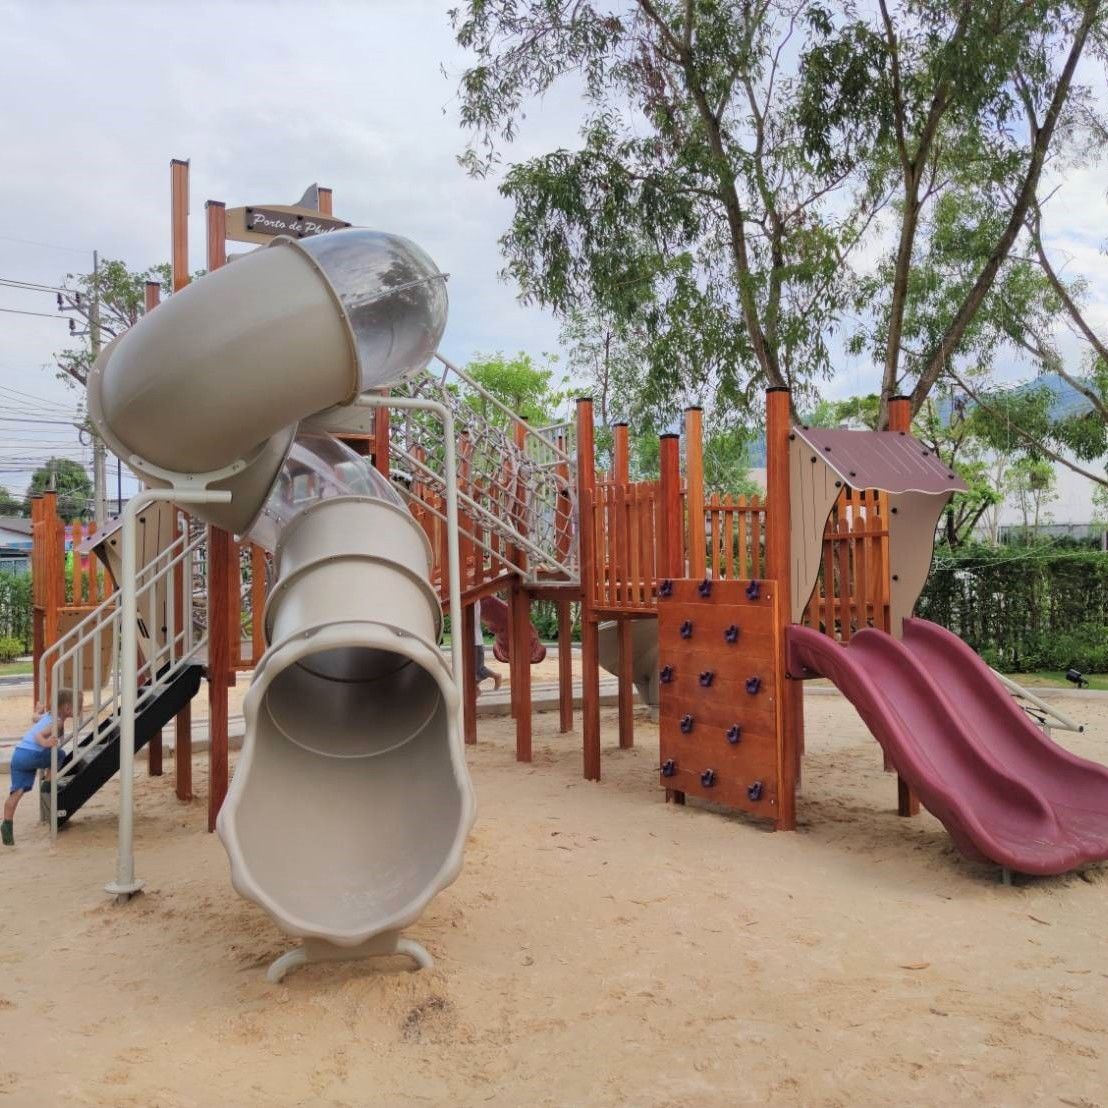 wood playground เครื่องเล่นสนามผลิตจากไม้จริง สำหรับภายนอก Design projects,บริการออกแบบเครื่องเล่นสนามฟรี